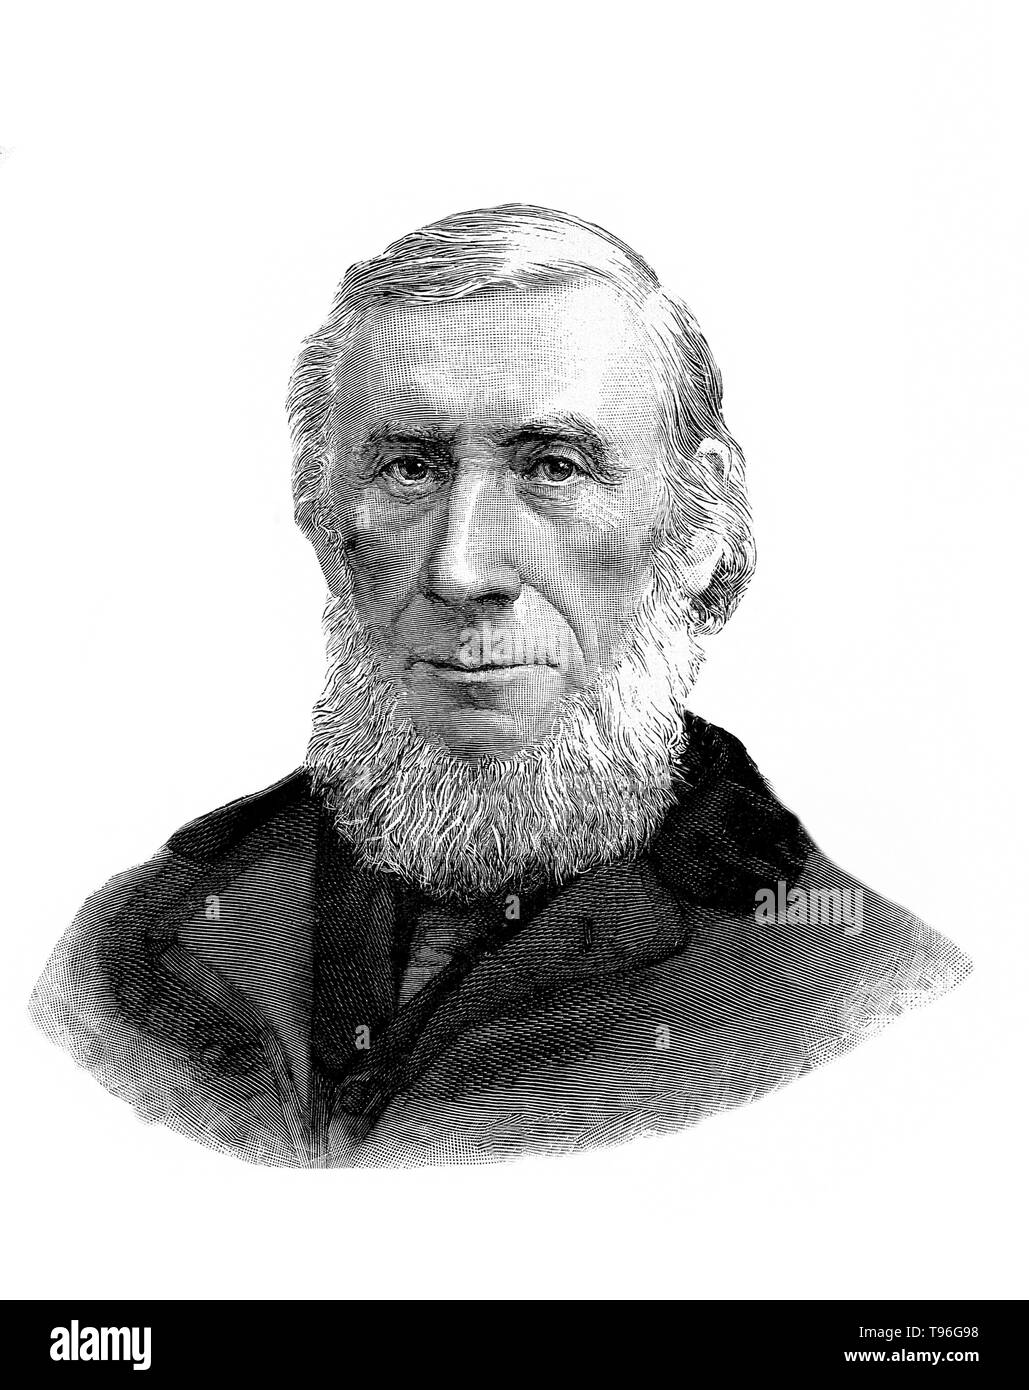 John Tyndall (2 août 1820 - 4 décembre, 1893) était un physicien irlandais et enseignant en médecine. C'est à la fin des années 1850, étudié le Tyndall de l'énergie rayonnante d'action sur les constituants de l'air. En 1893, il est mort d'un surdosage accidentel de l'hydrate de chloral. Il était de 73 ans. La gravure sur bois, 1893, après Elliott & Fry. Banque D'Images